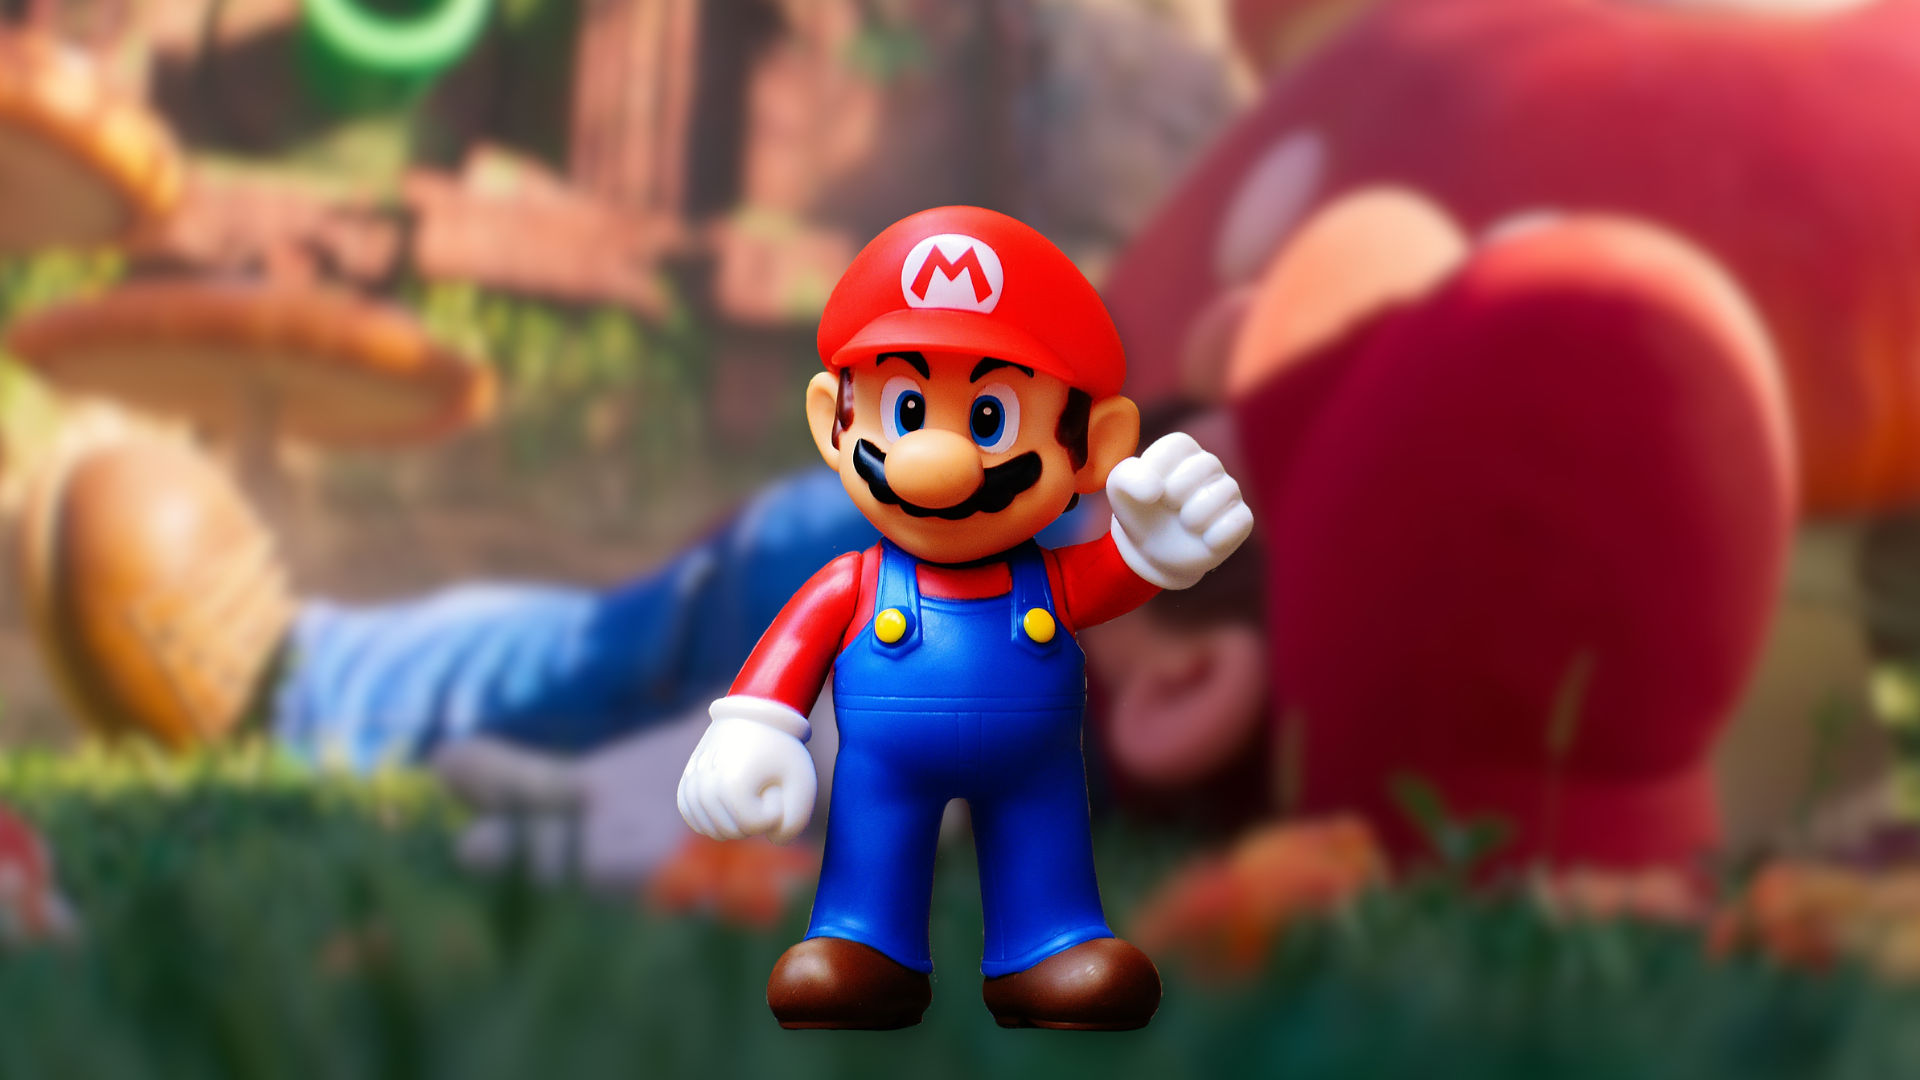 Mario Movie McDonald’s toys set to bring the joy in Happy Meals